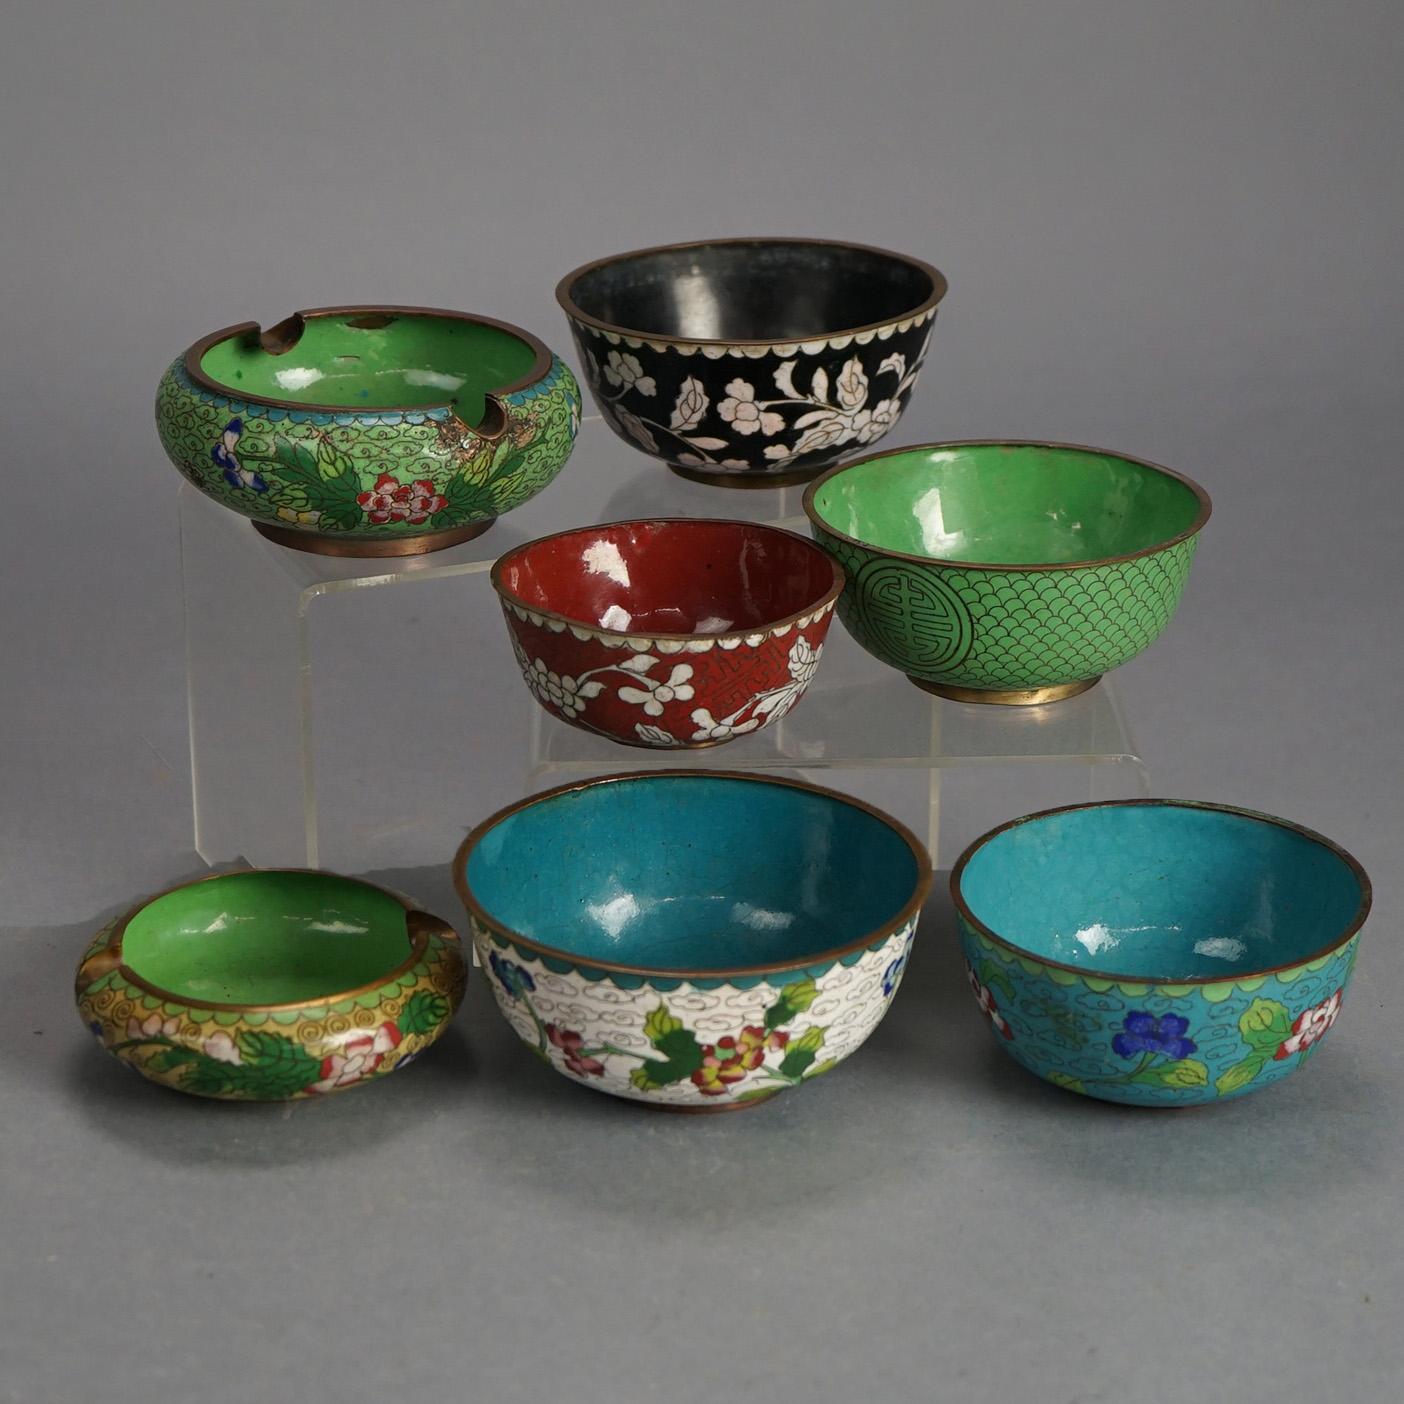 Sieben antike chinesische Bronze Cloisonne emaillierte Reisschüsseln mit Blumen, C1920

Maße - 1.25 